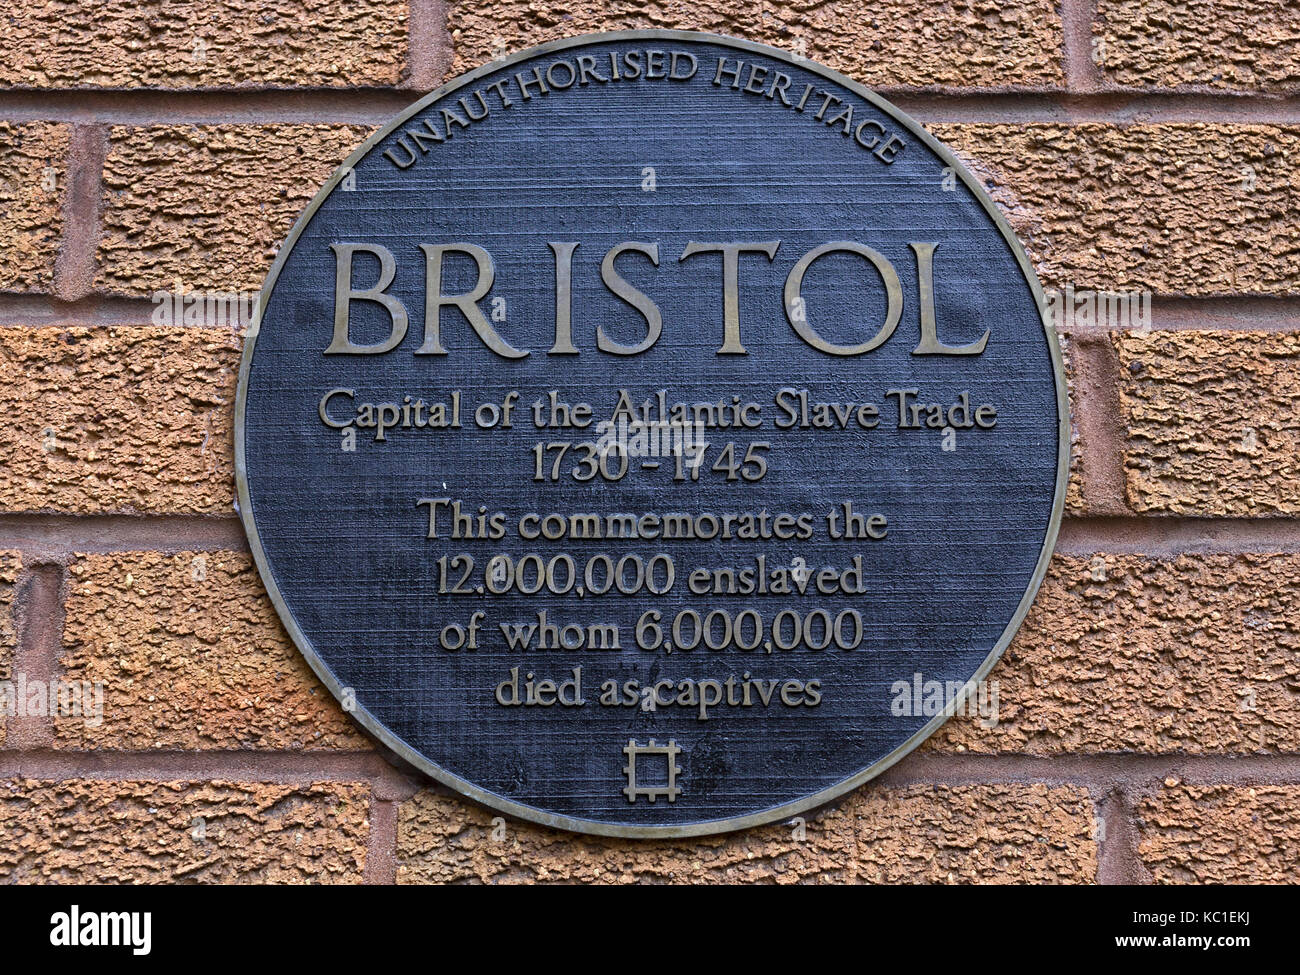 Eine Plakette des Künstlers will Coles markiert Bristol's Engagement im atlantischen Sklavenhandel. Es ist ähnlich wie eine auf einer Statue von Edward Colston. Stockfoto